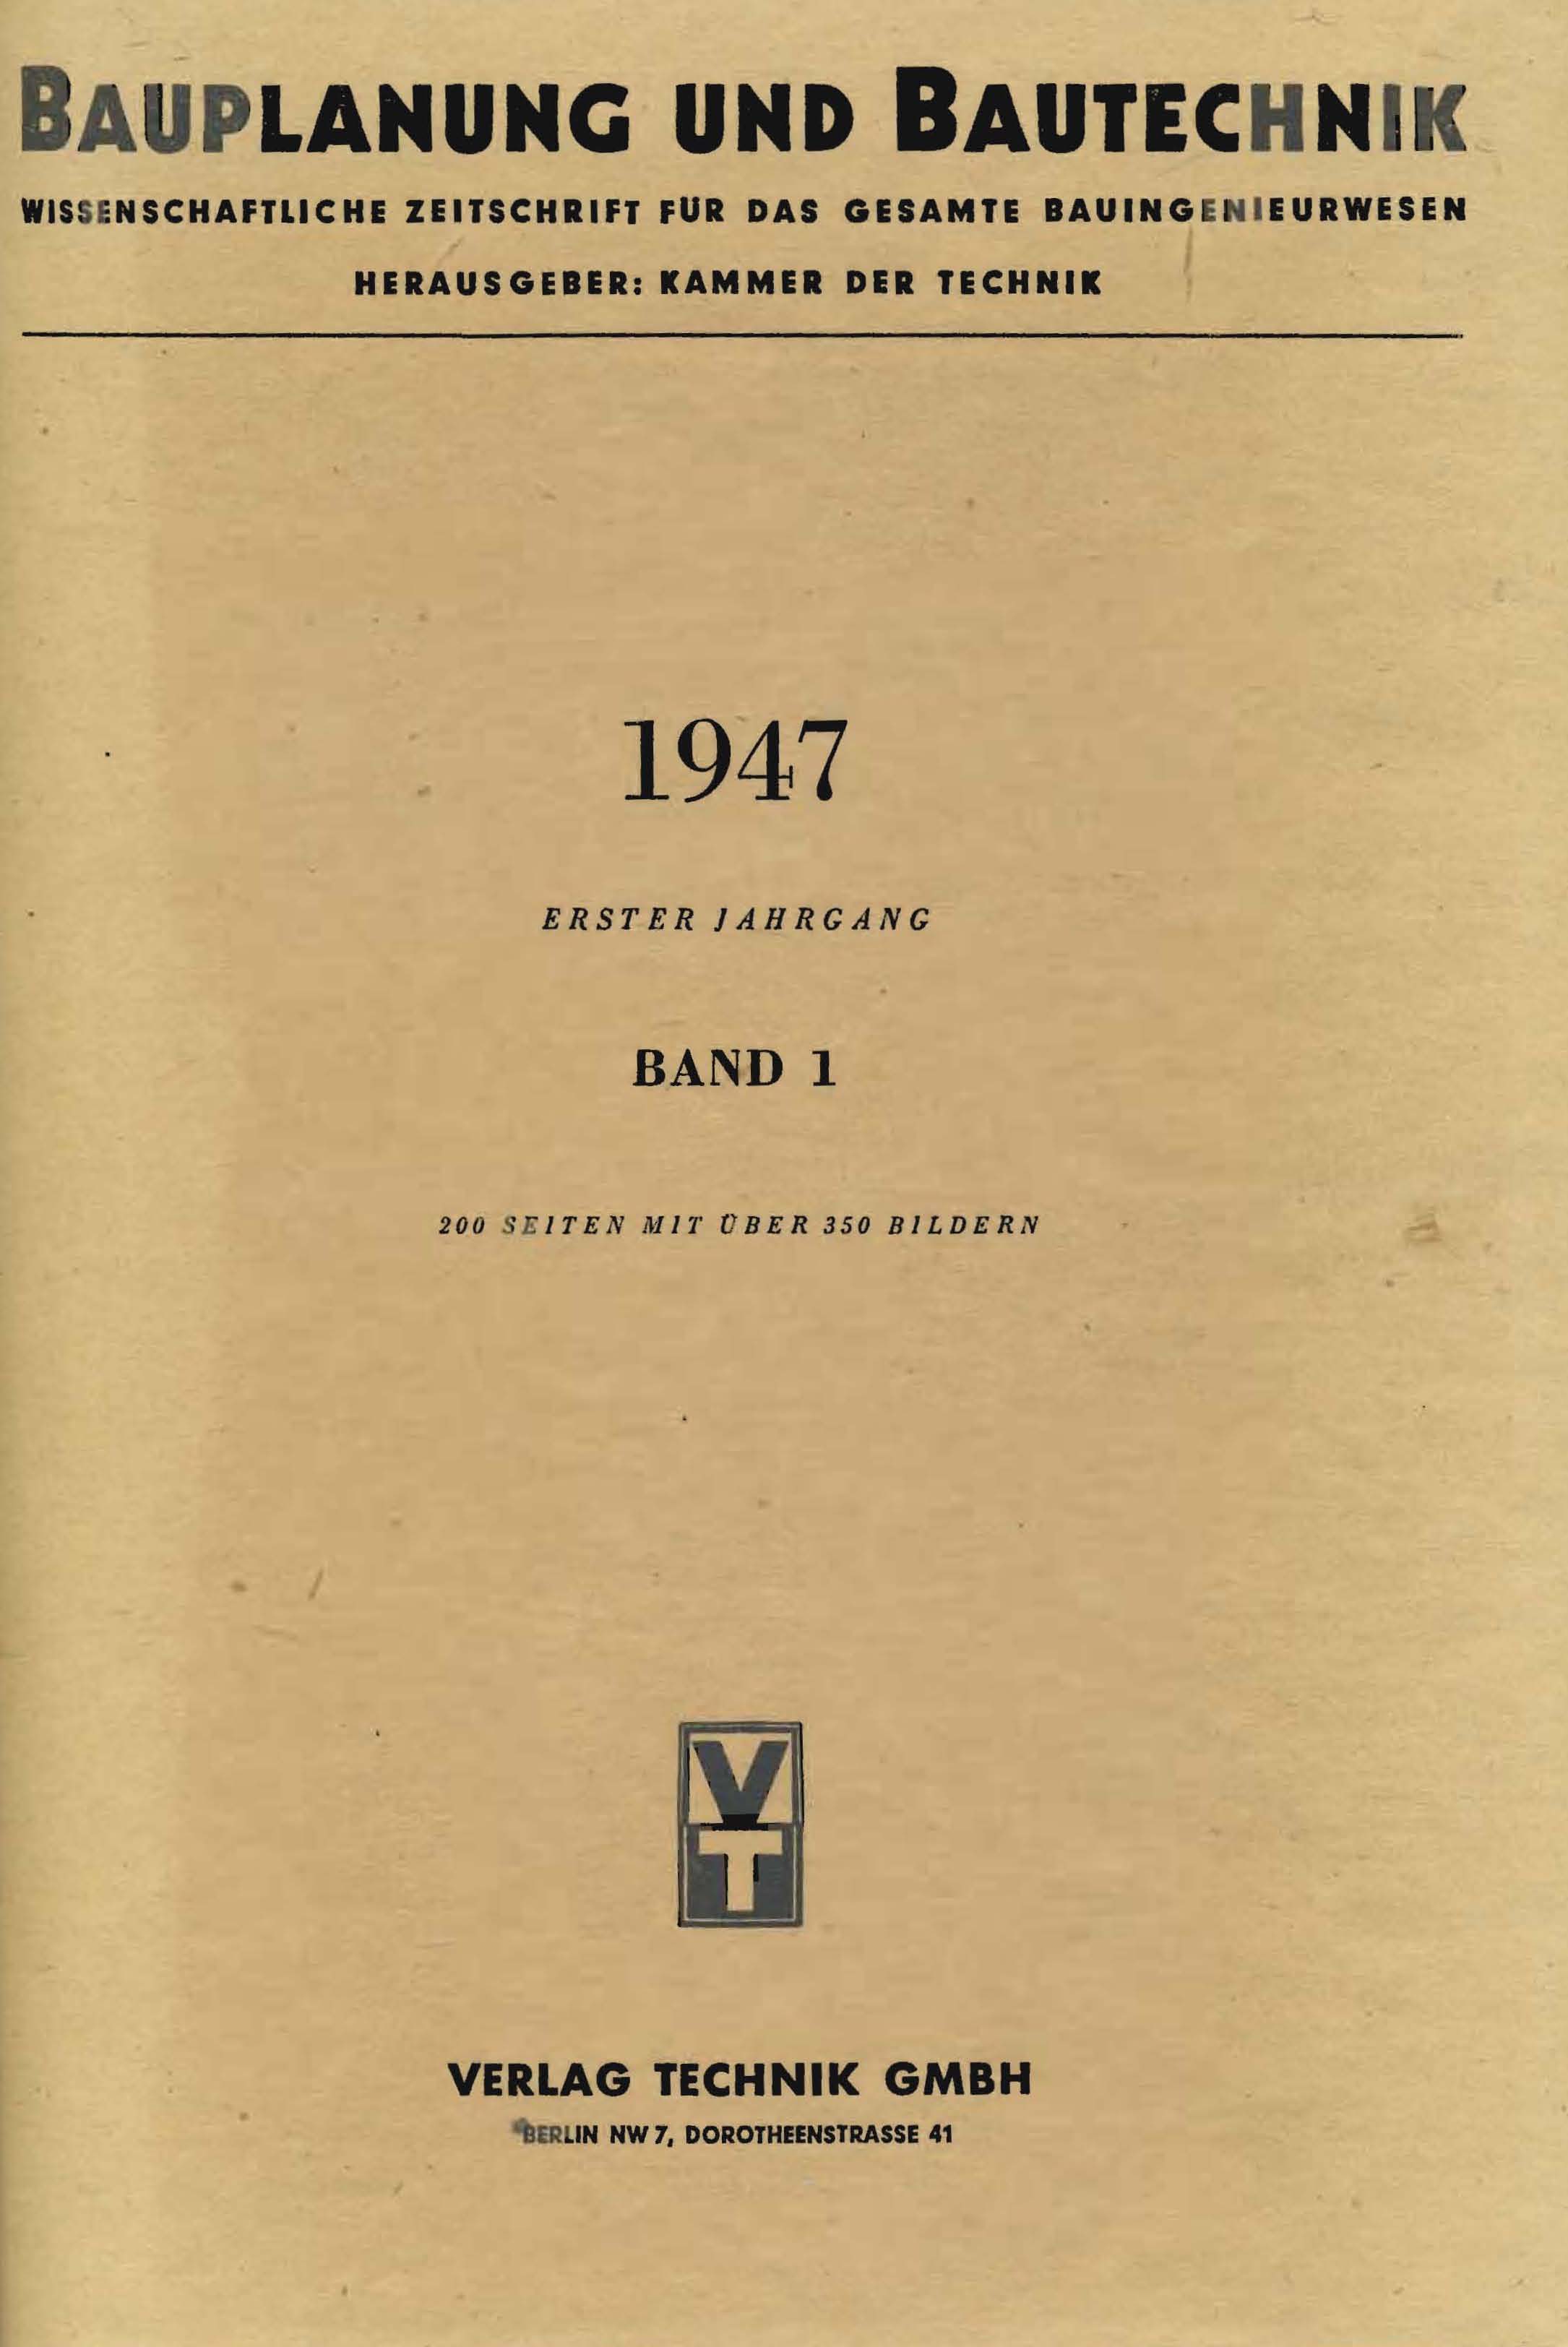 Bauplanung und Bautechnik, 1947, Erster Jahrgang, Band 1